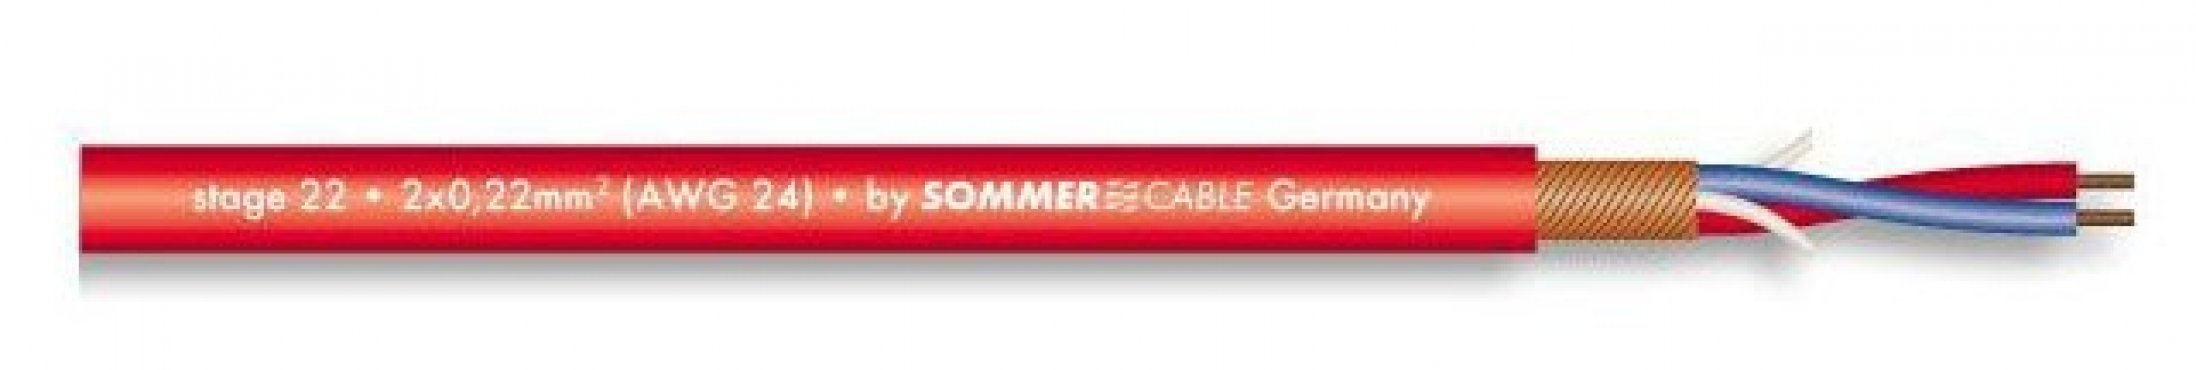 Sommer Cable 200-0003 STAGE HIGHFLEX - ČERVENÝ